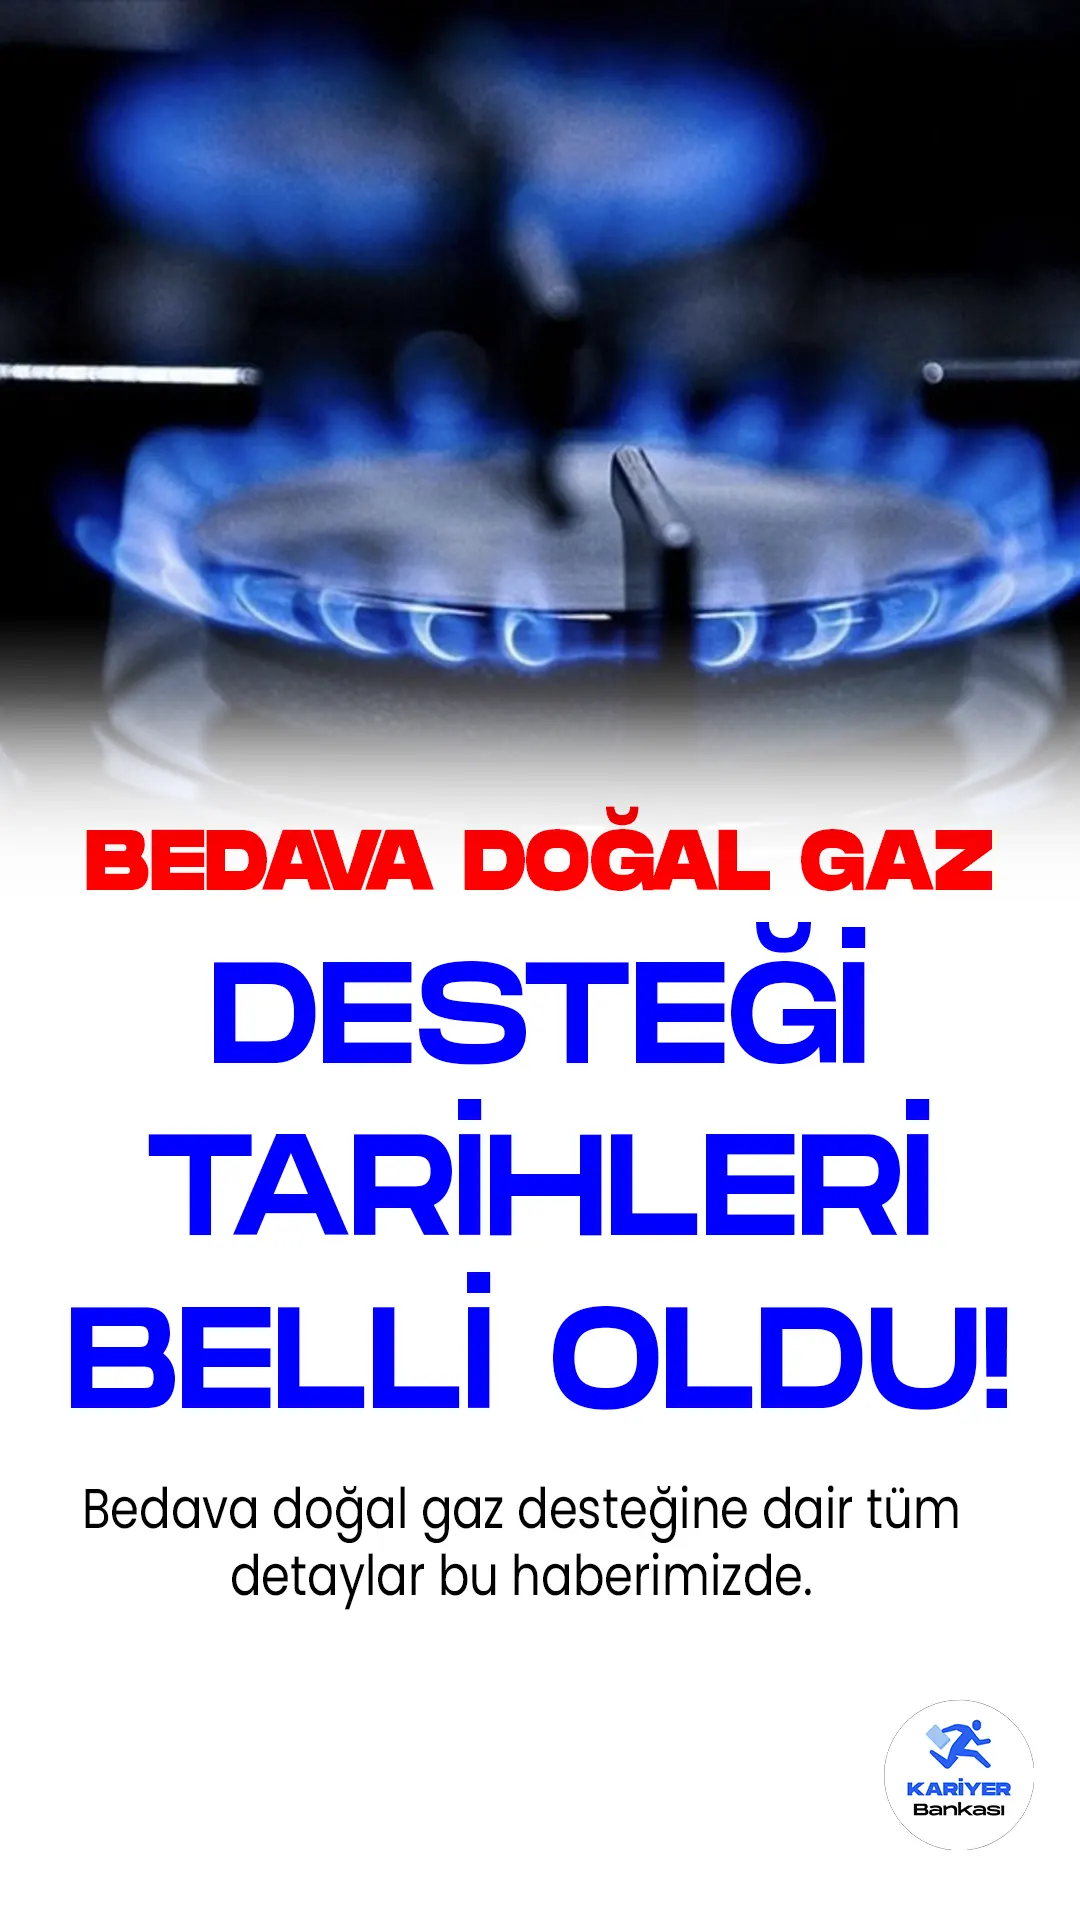 Bedava doğal gaz desteği tarihleri ve detayları belli oldu. Türkiye Doğal Gaz Dağıtıcıları Birliği Başkanı Yaşar Arslan, doğal gaz desteğiyle hane başına toplam indirimler baz alınarak ortalama 2 bin lira tutarındaki doğal gaz faturasının ücretsiz olacağını açıkladı.